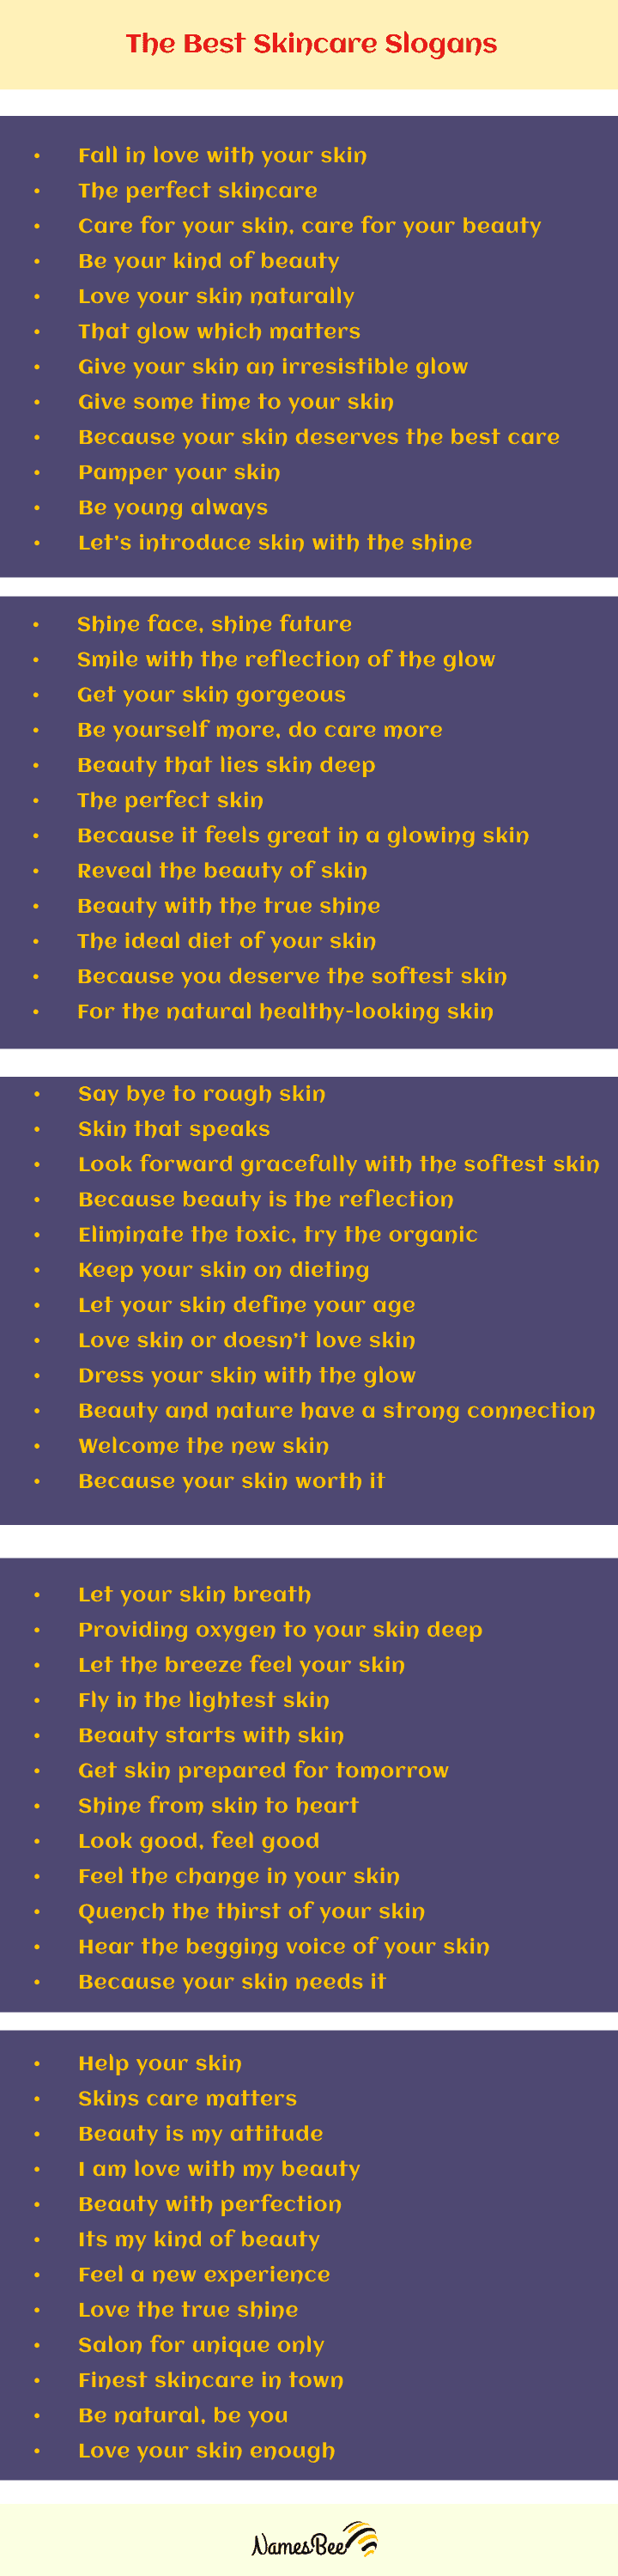 Skincare Slogans Ideas List